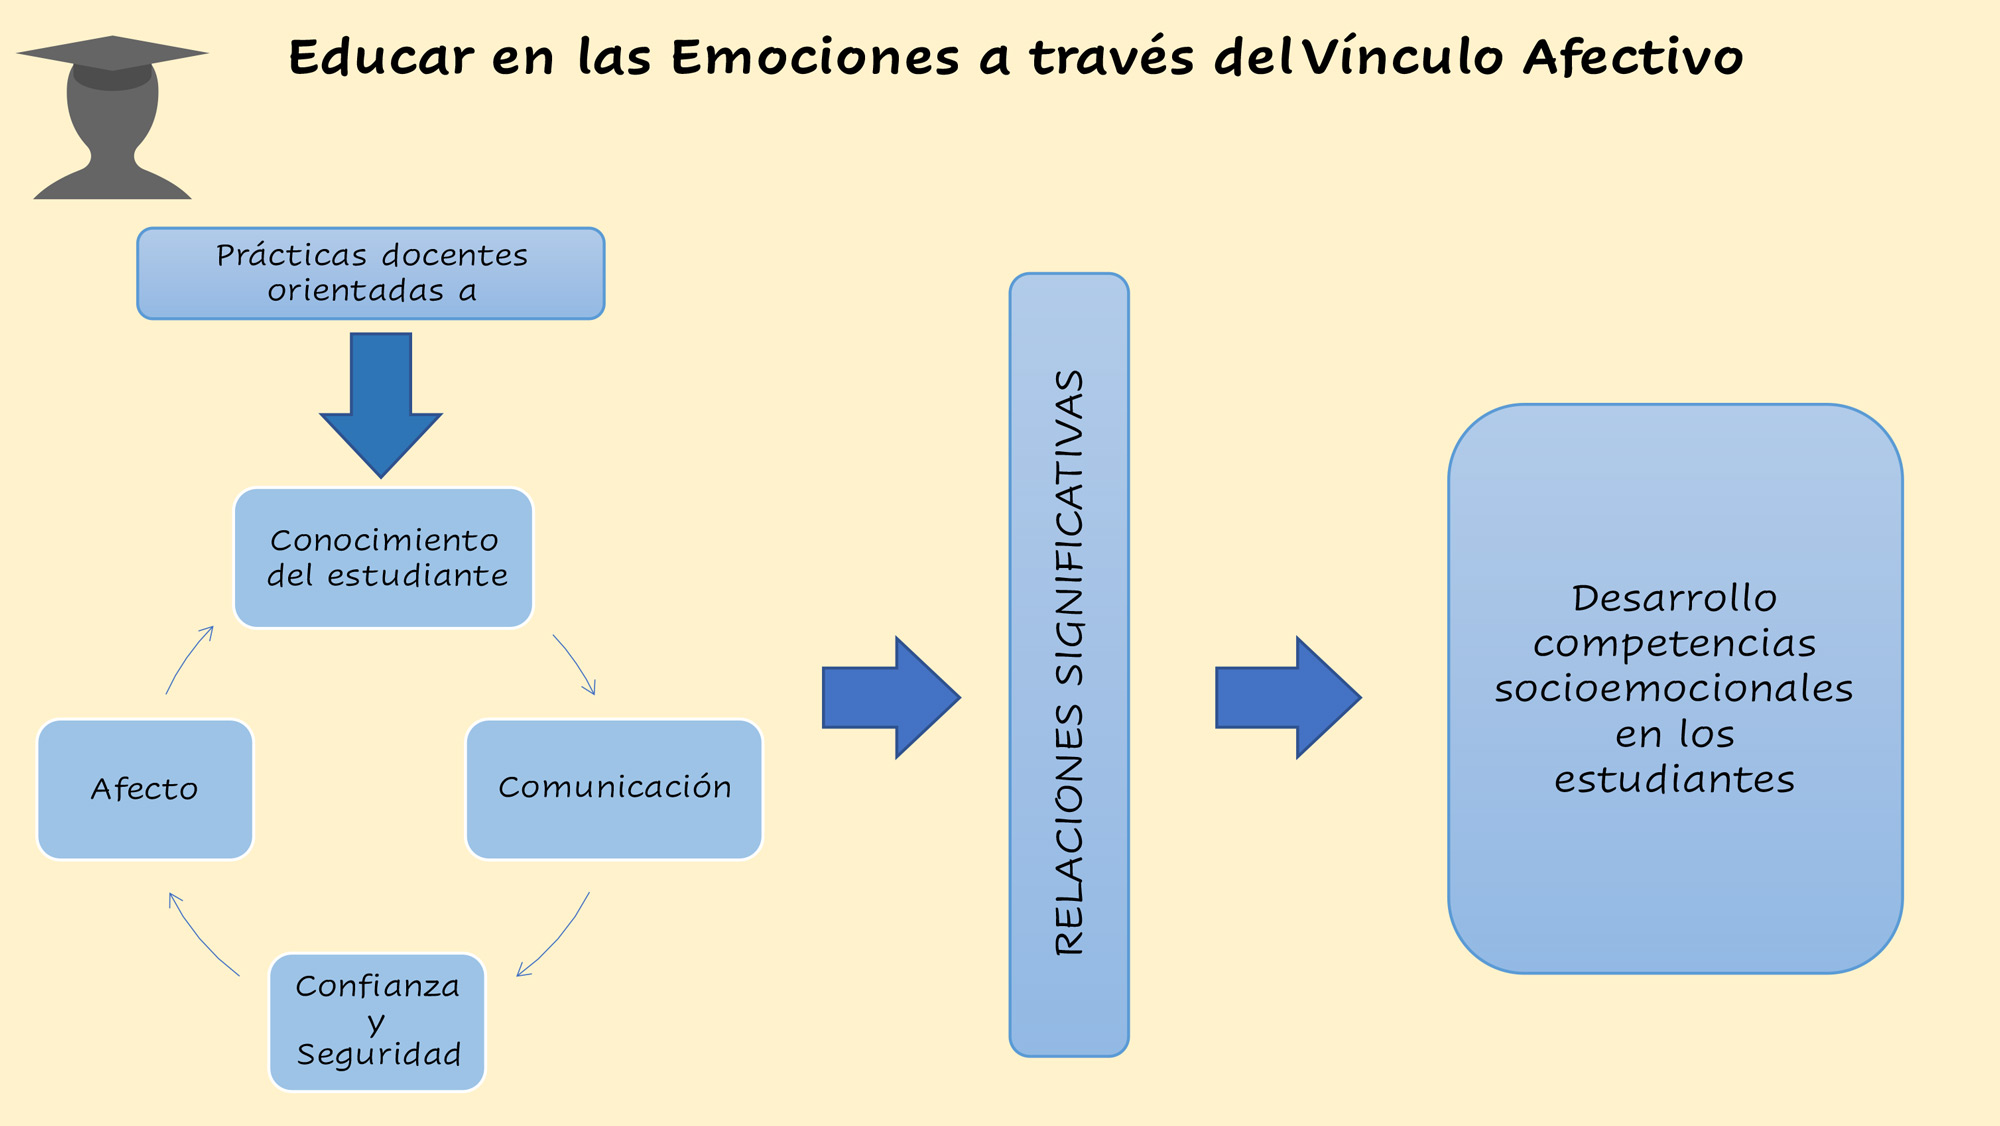 Figura 2 Educar en las Emociones a través del Vínculo Afectivo